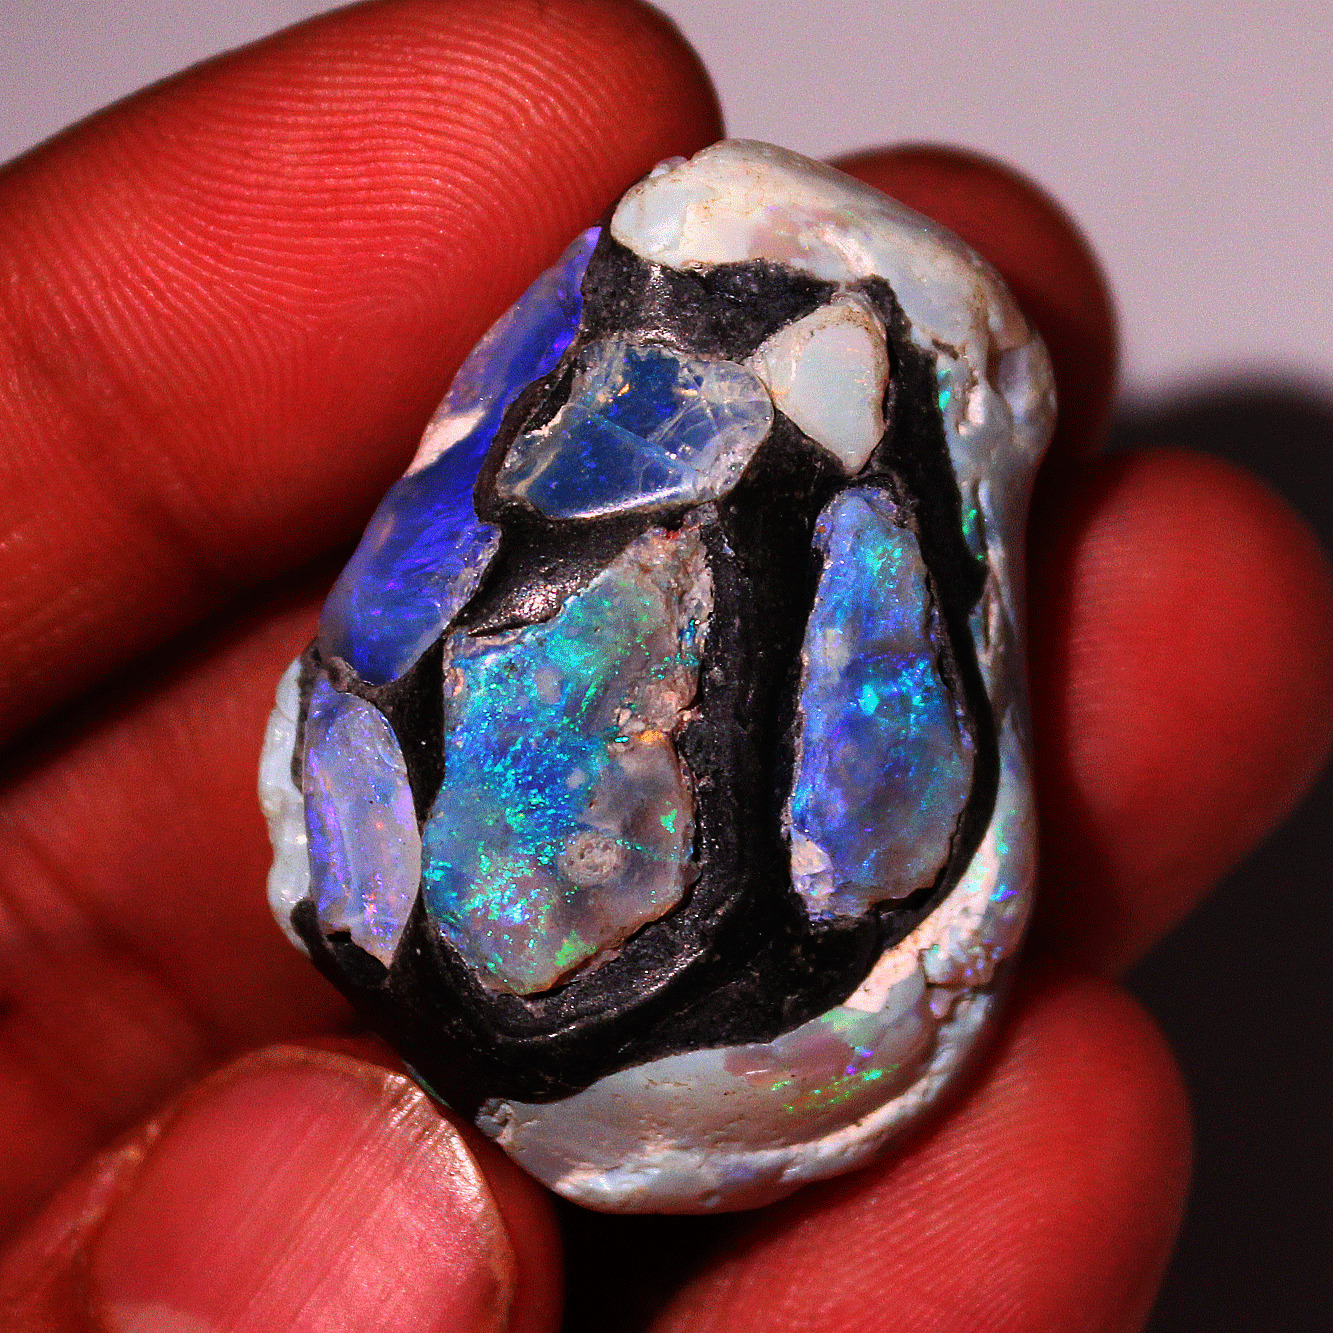 17g Natural Australian Opal Collector's Grade Polished Crystal Freeform Specimen